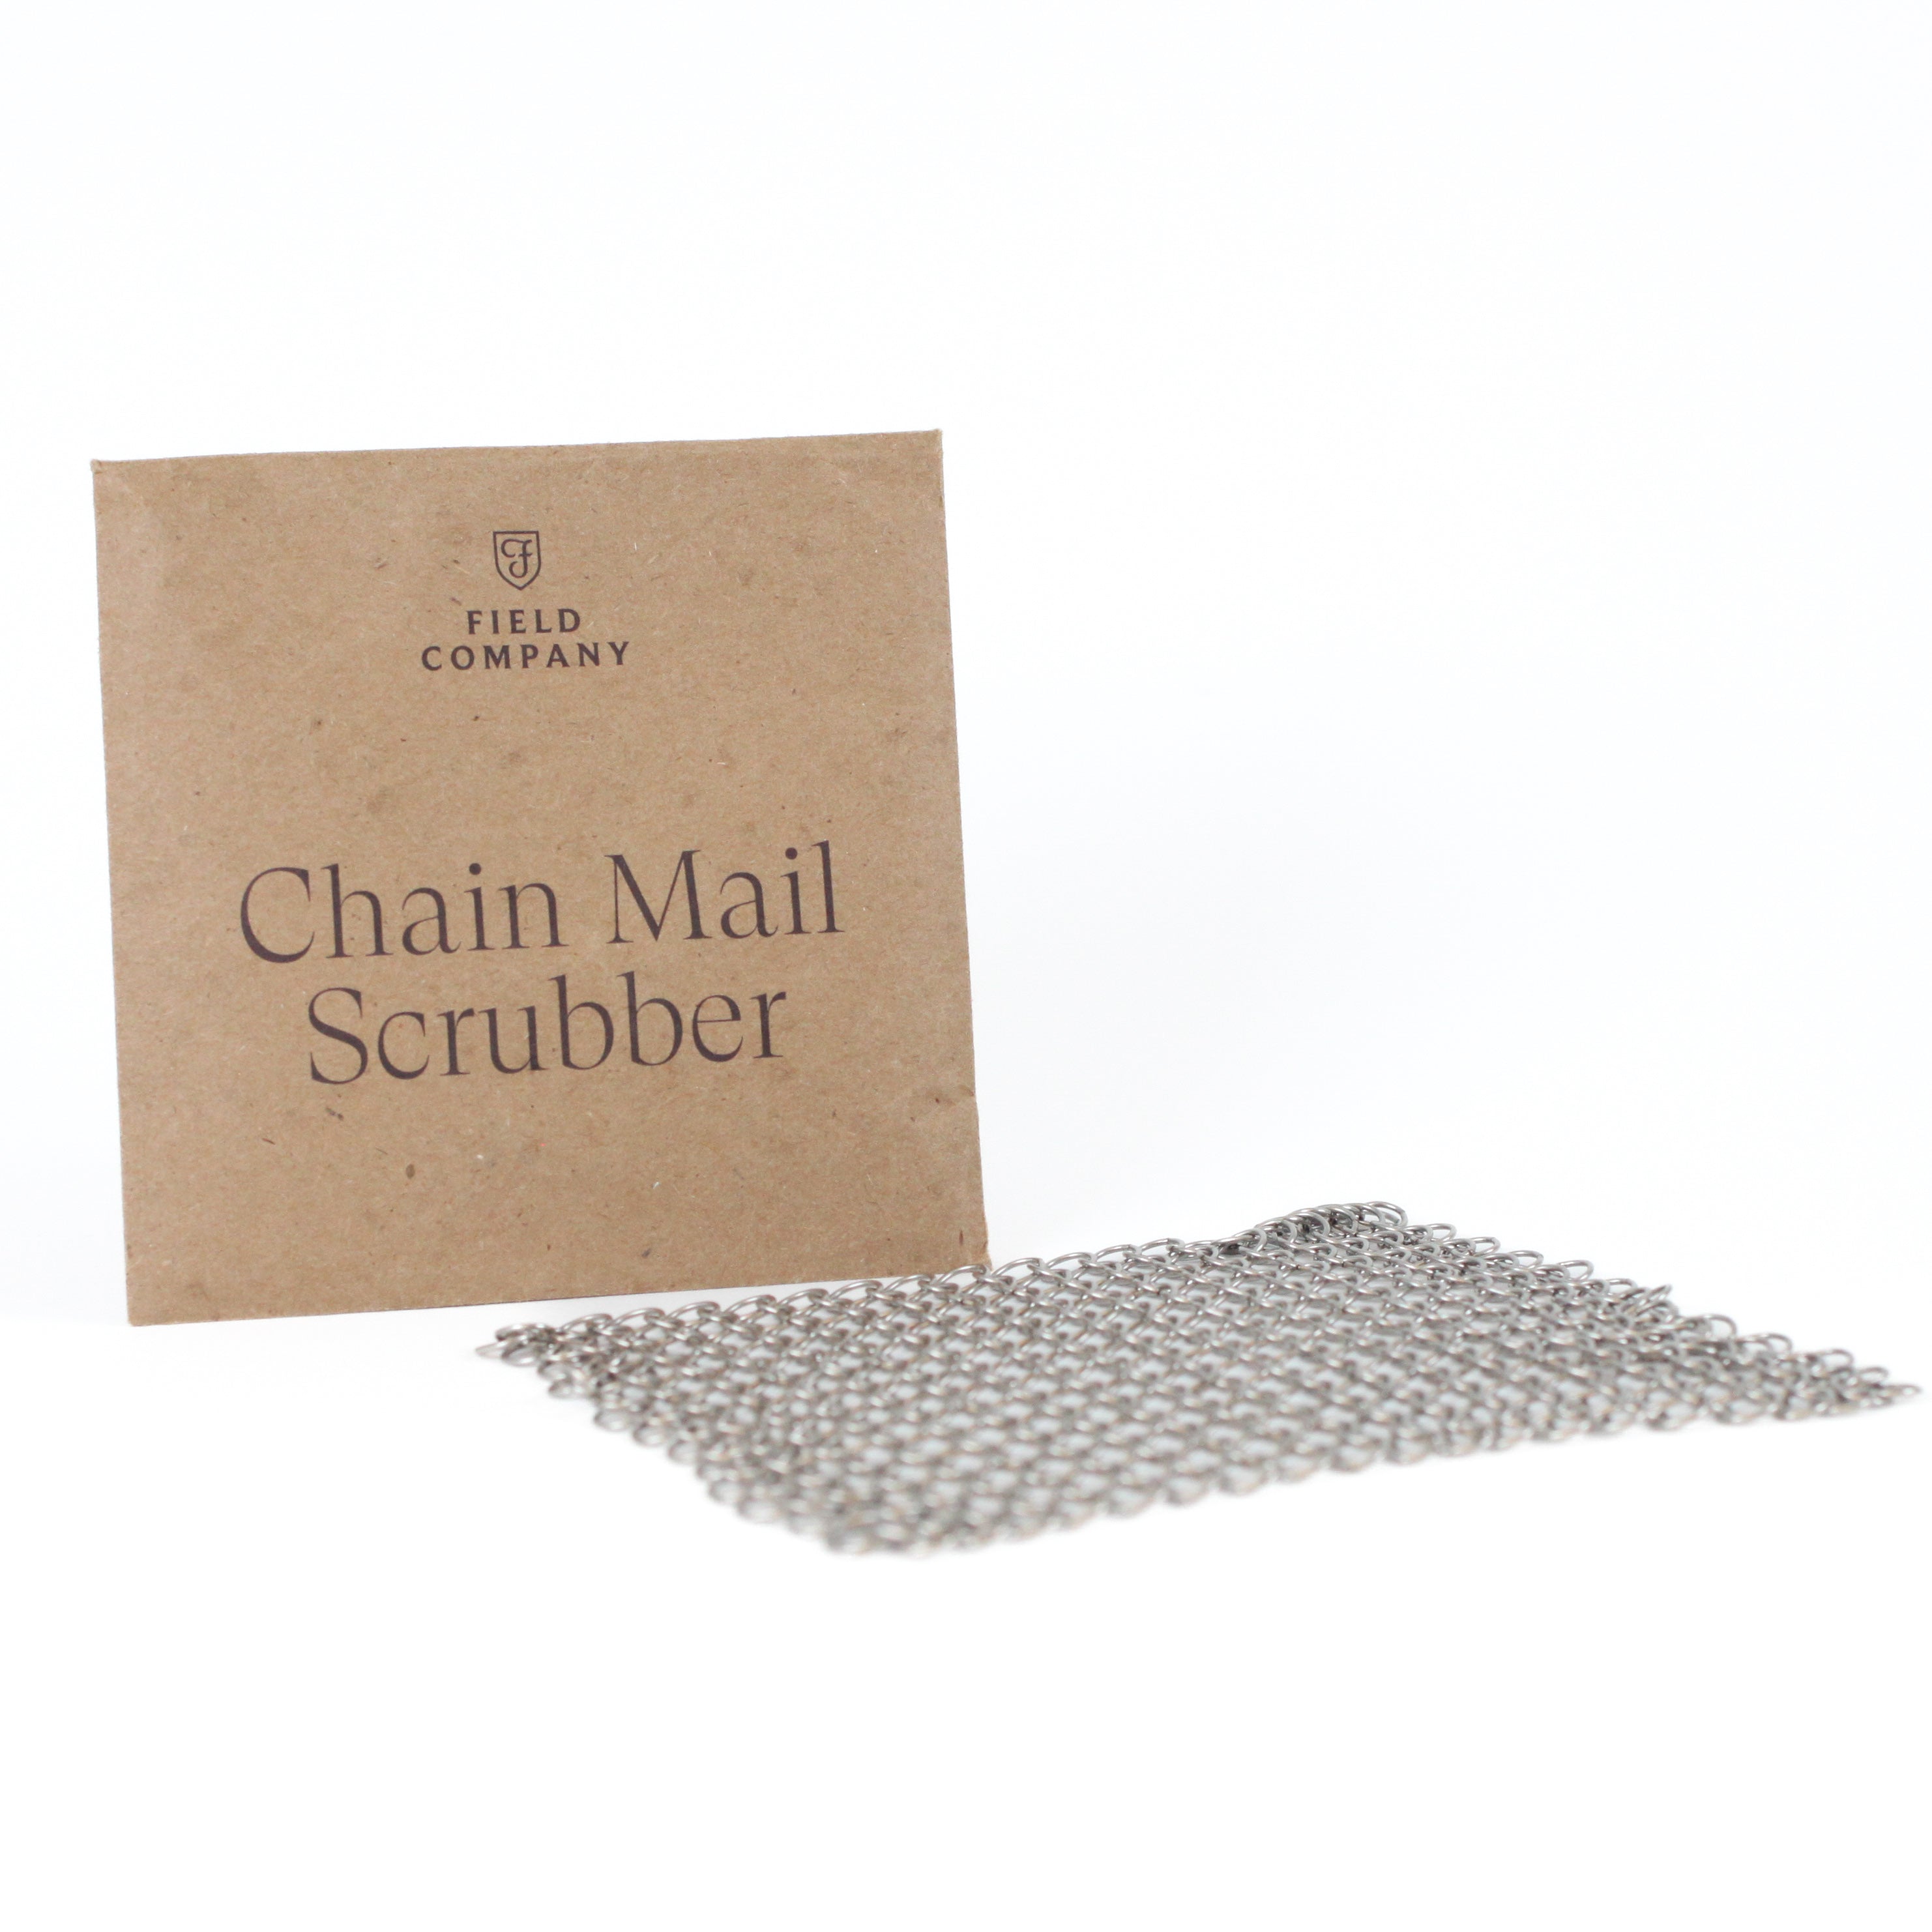 Field Company Chain Mail Scrubber